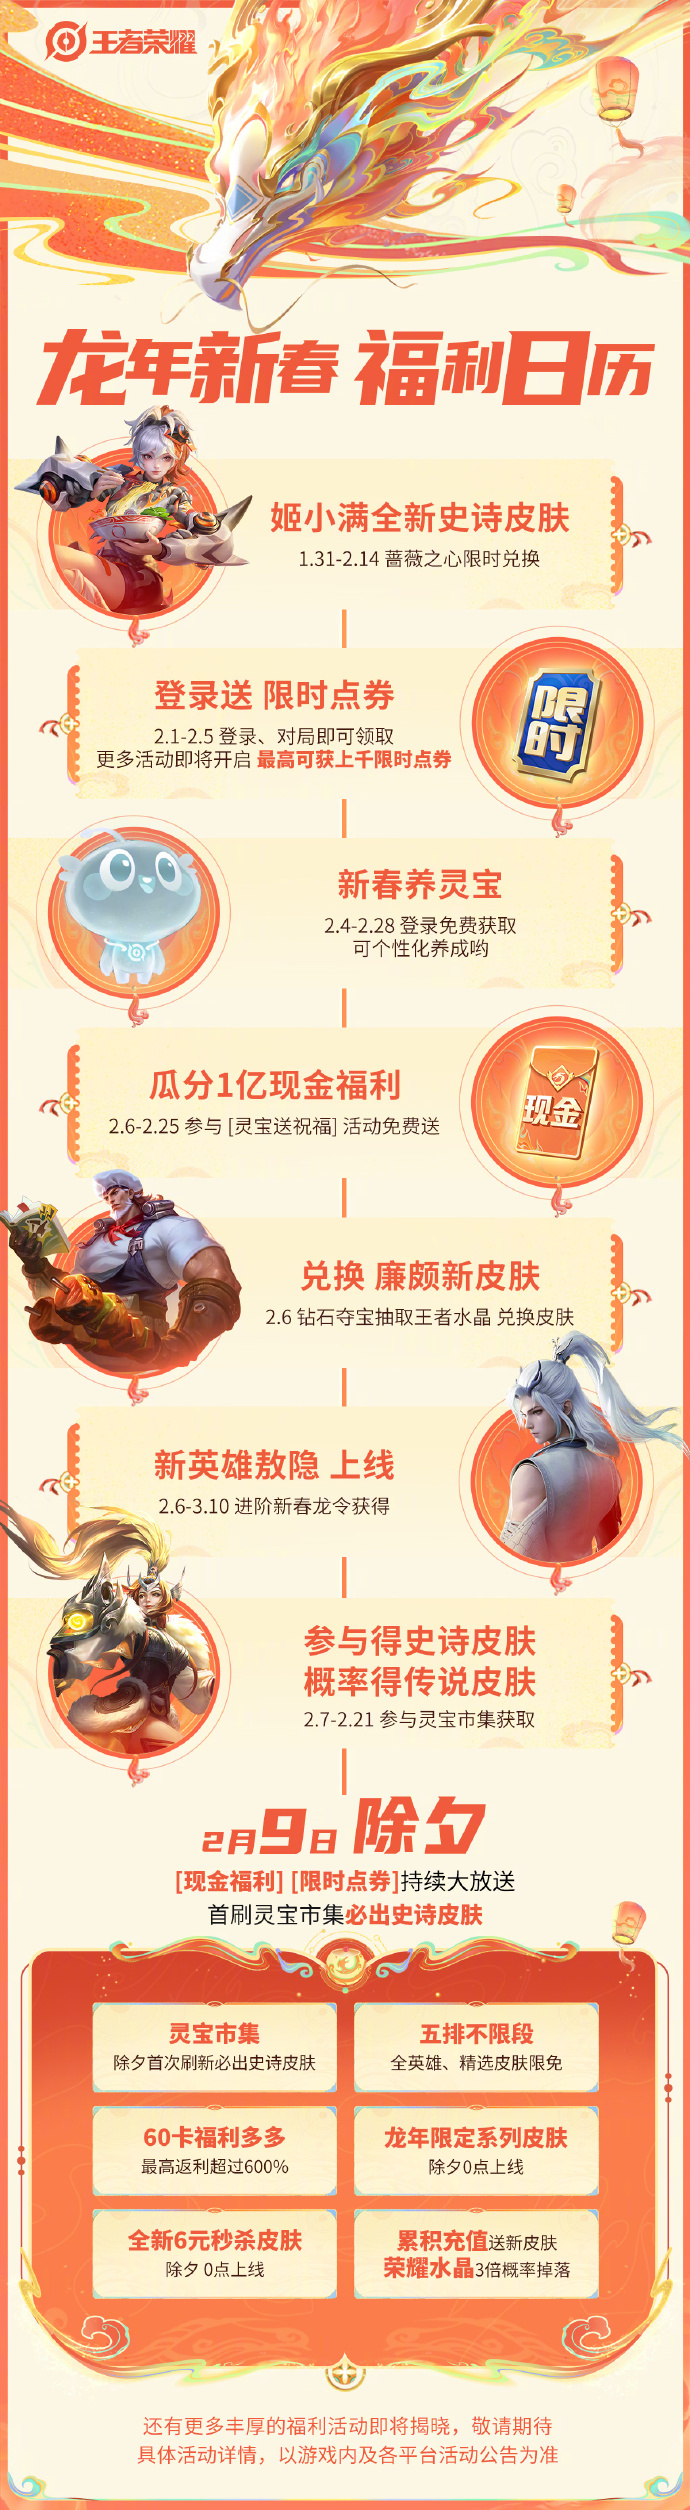 《王者荣耀》龙年新春版本「龙祐千载」预告&福利公布